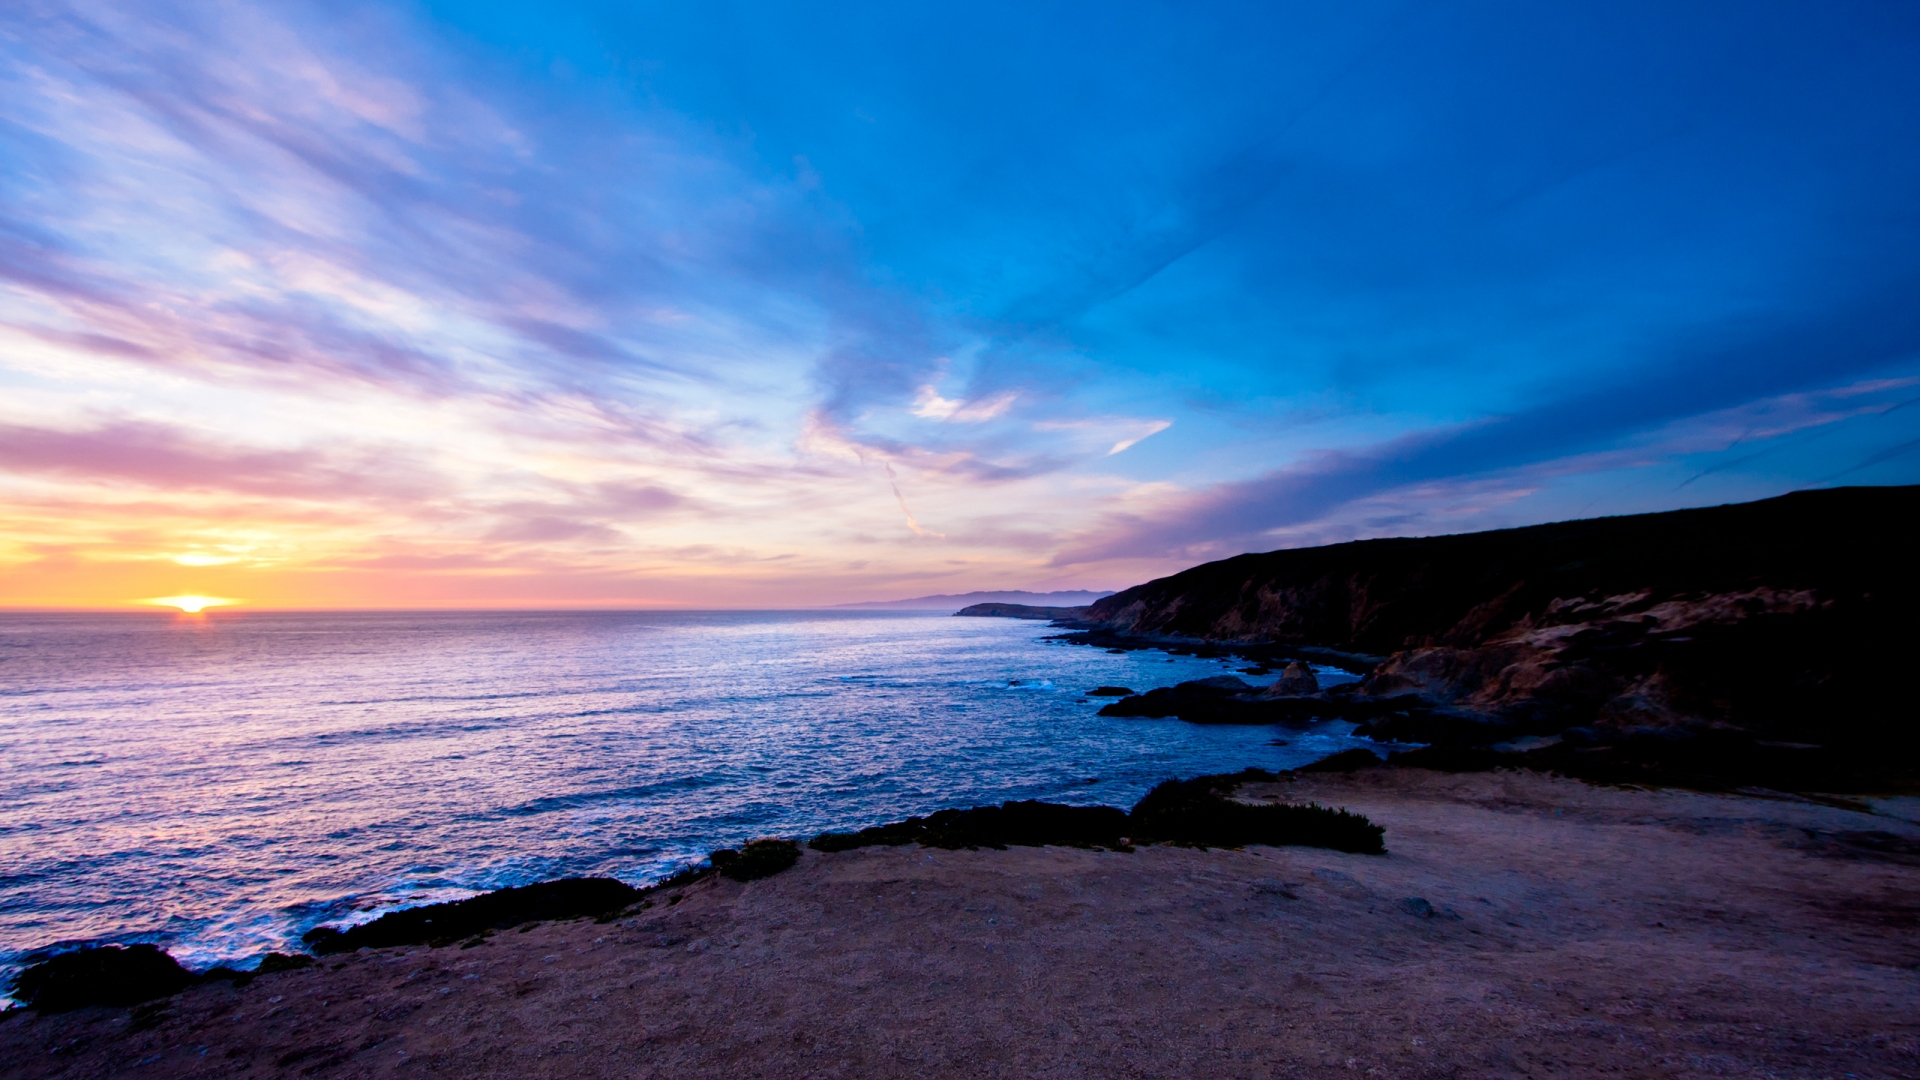 Bodega Head Sunset for 1920 x 1080 HDTV 1080p resolution